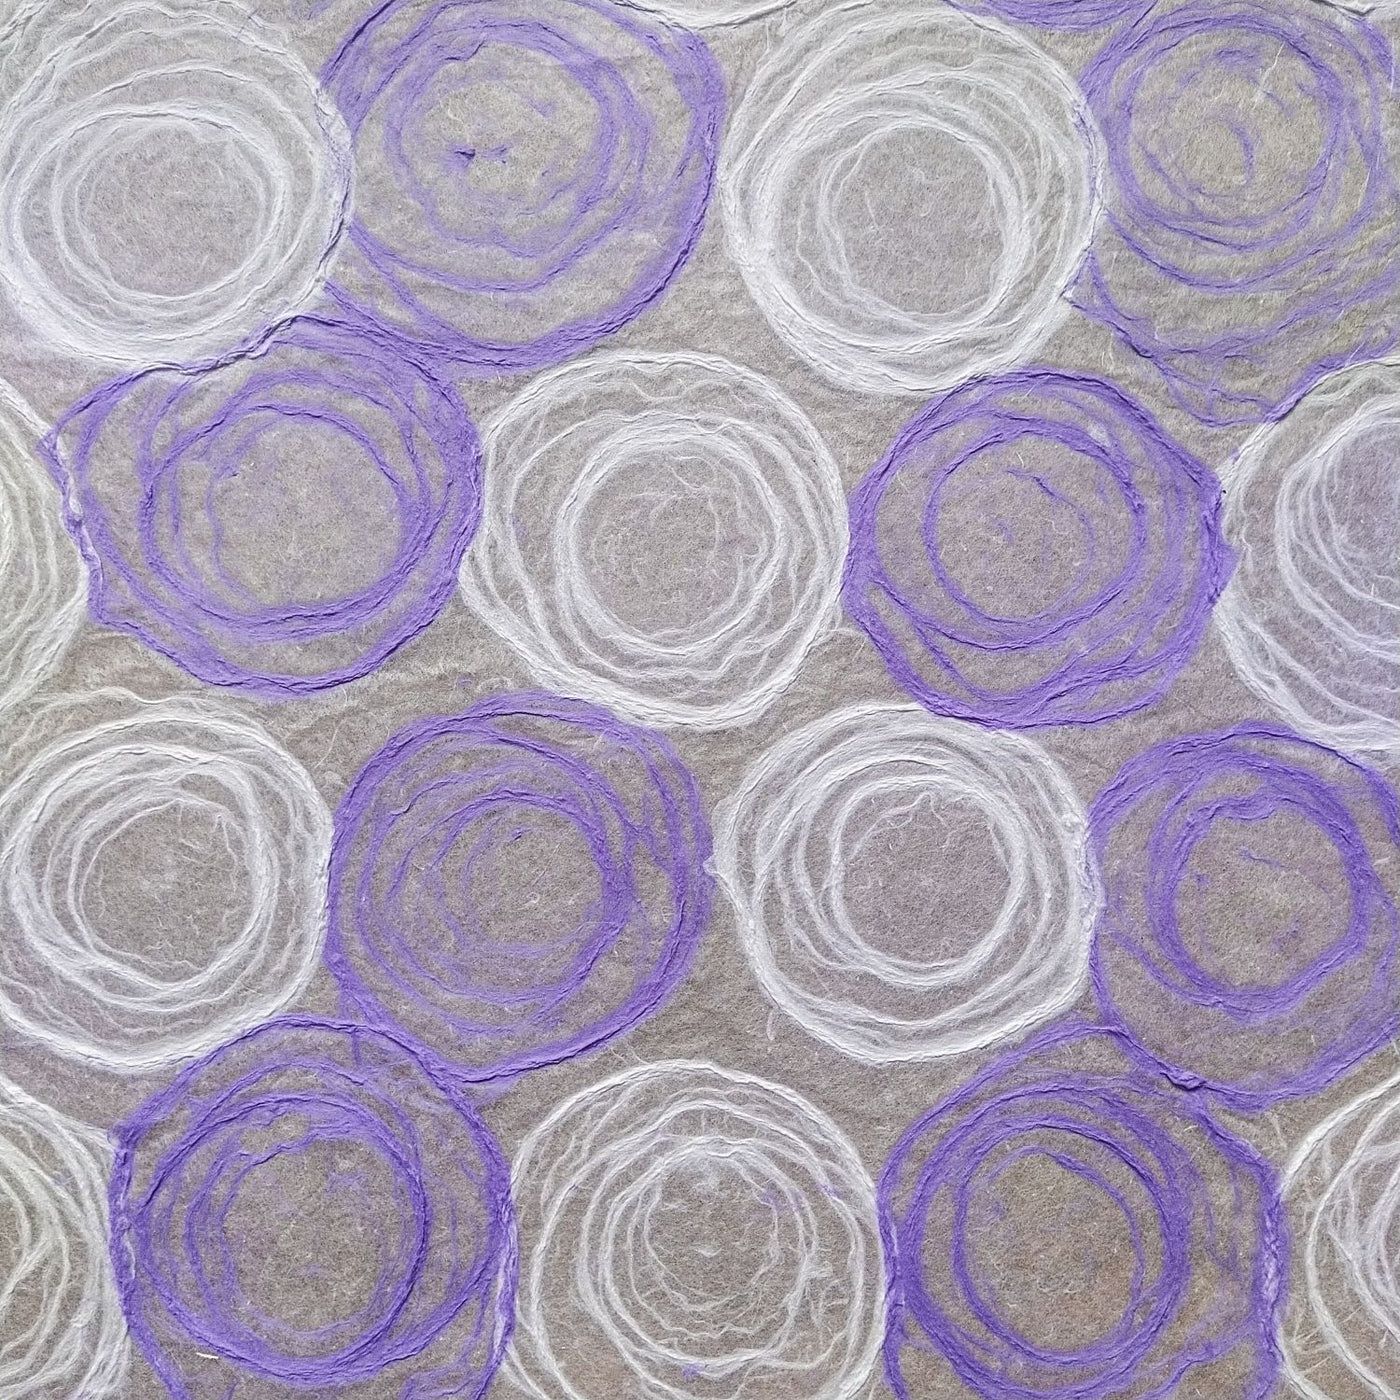 Handmade Rose Kozo Paper (Purple and White)